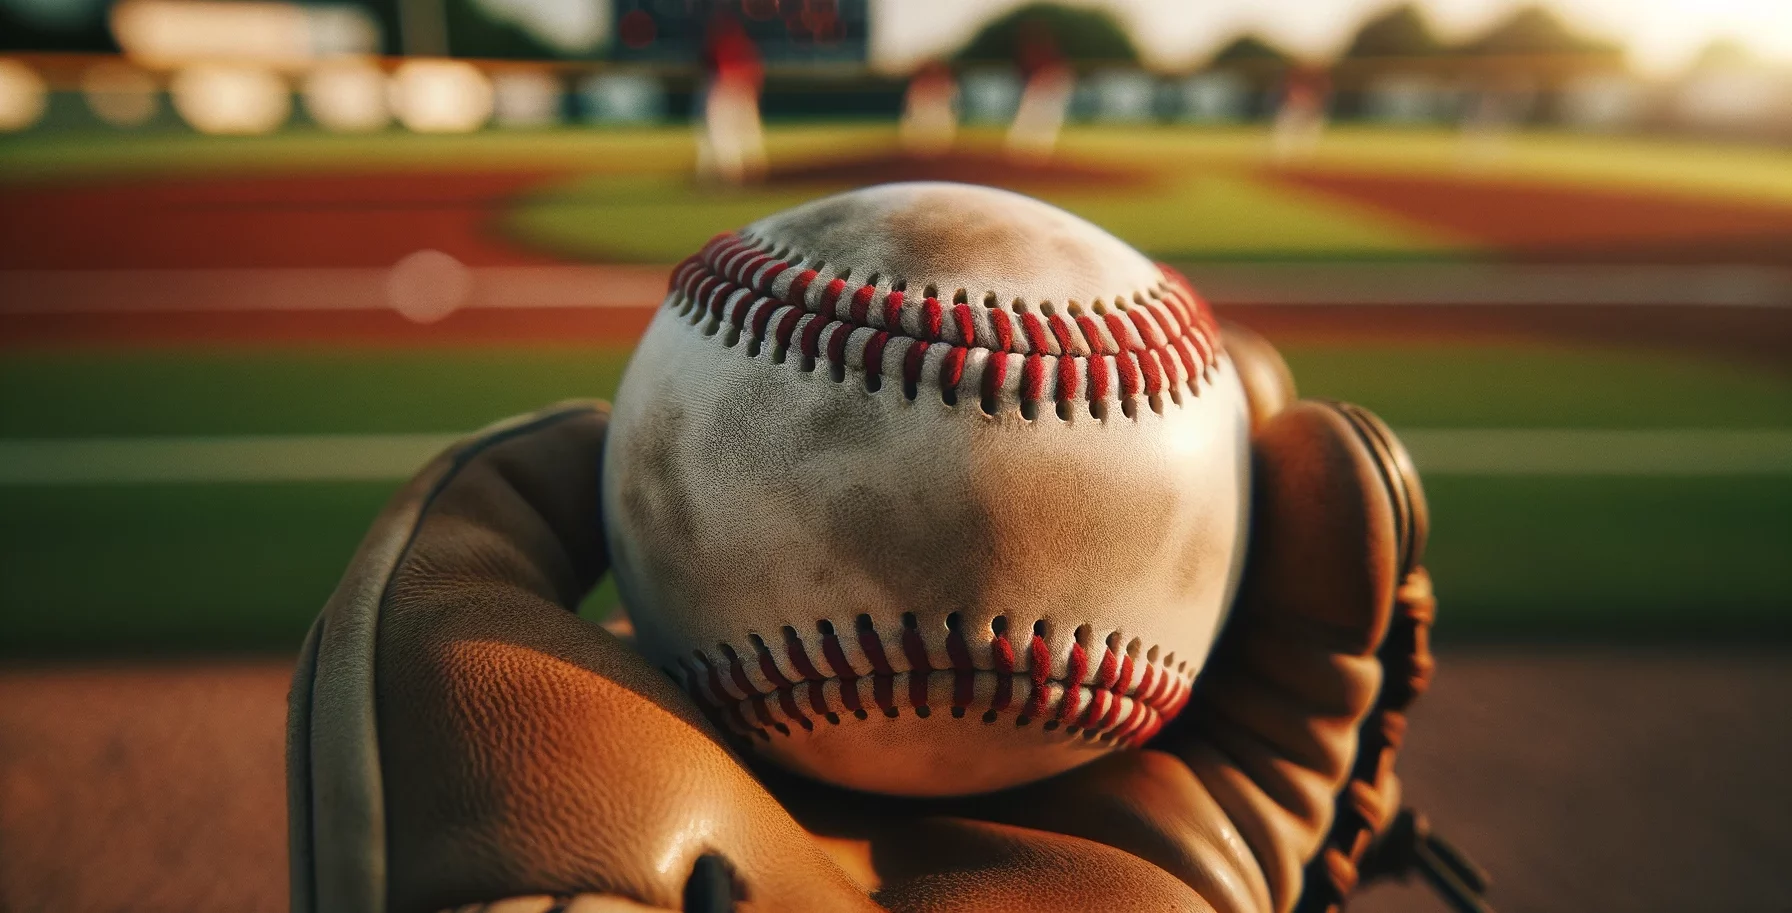 Eine Großaufnahme eines Baseballs, die Details wie die roten Nähte und die Textur des weißen Leders zeigt